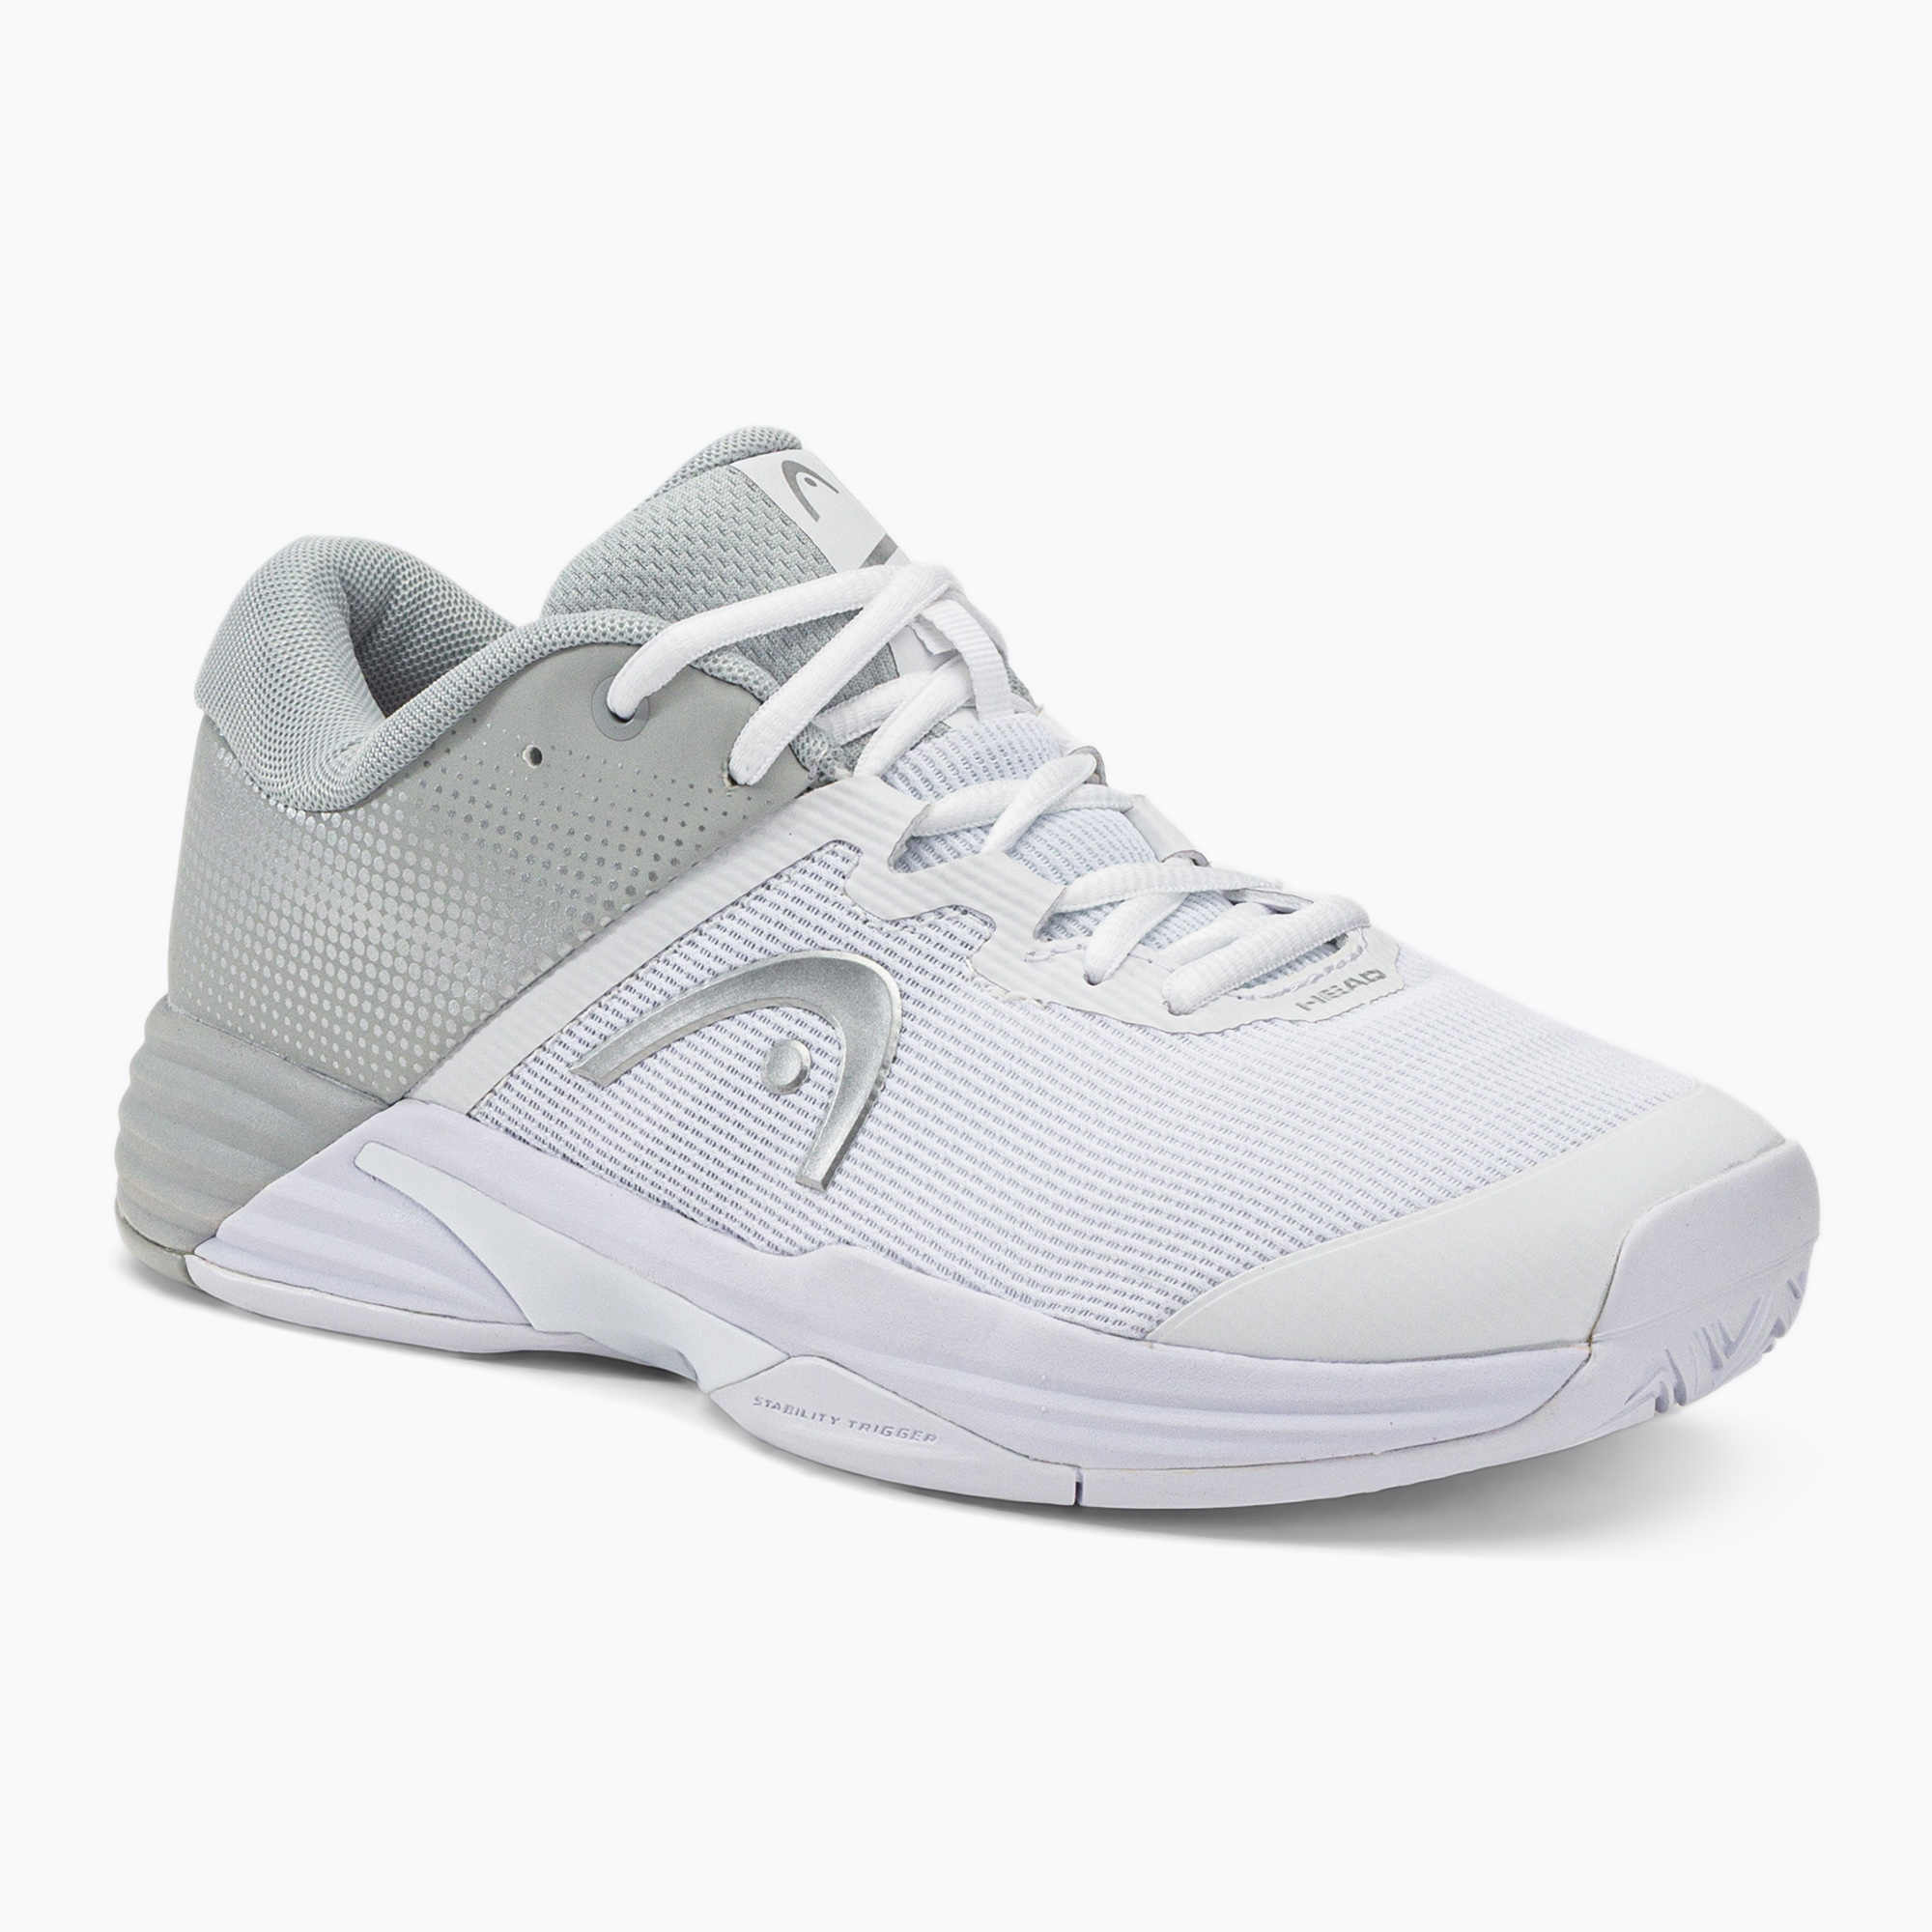 HEAD Revolt Evo 2.0 дамски обувки за тенис в бяло и сиво 274212